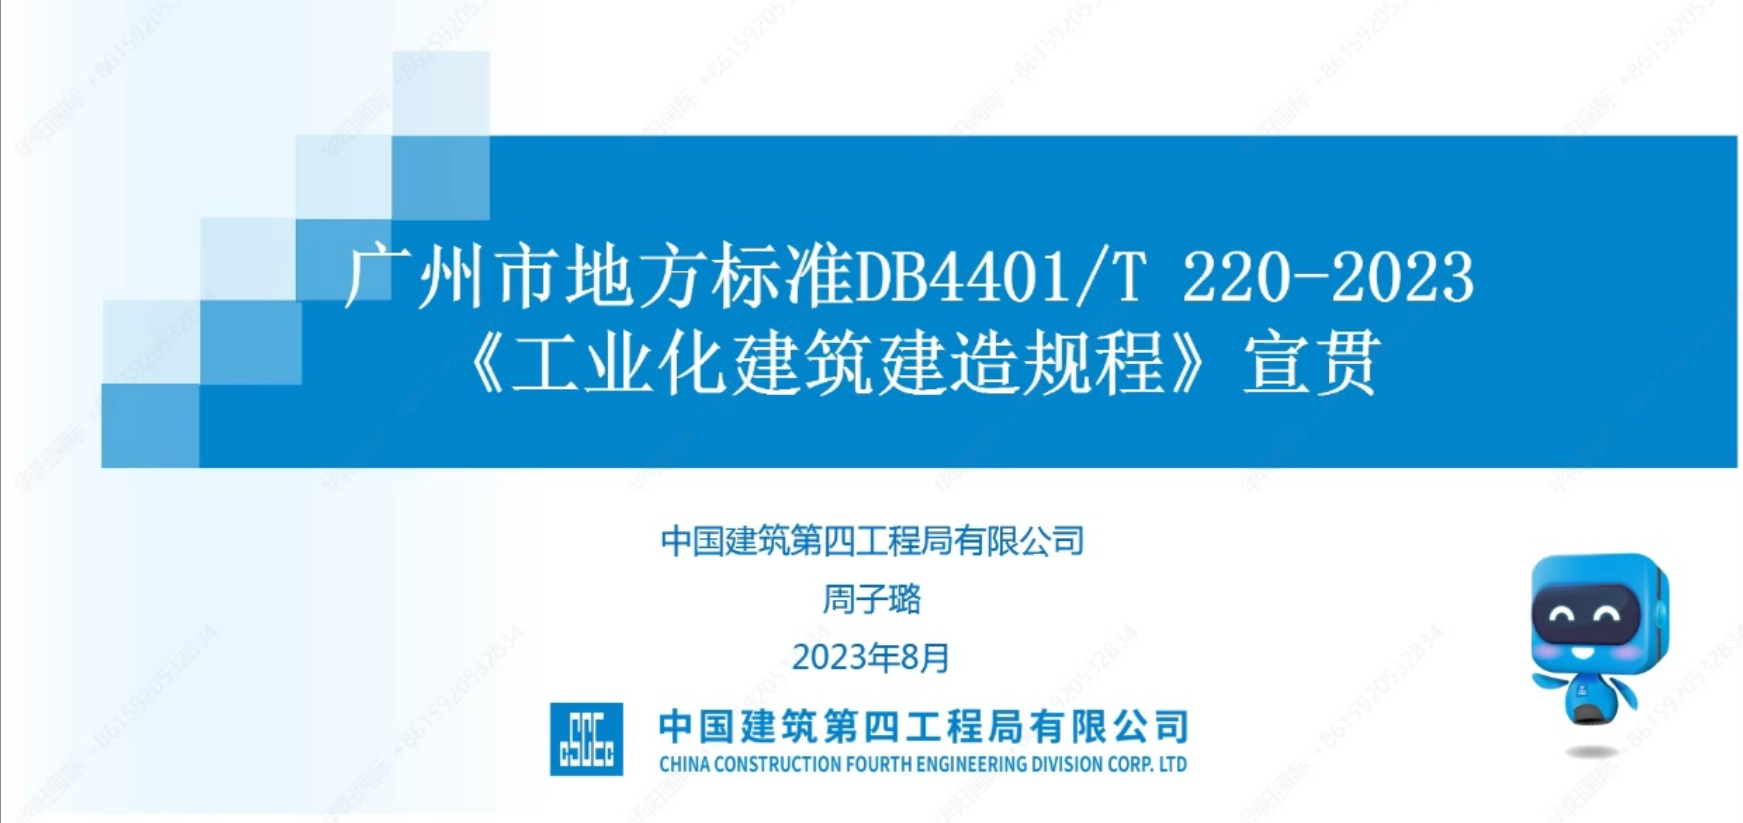 廣州市地方標準DB4401/T 220-2023《工業化建筑建造規程》宣貫